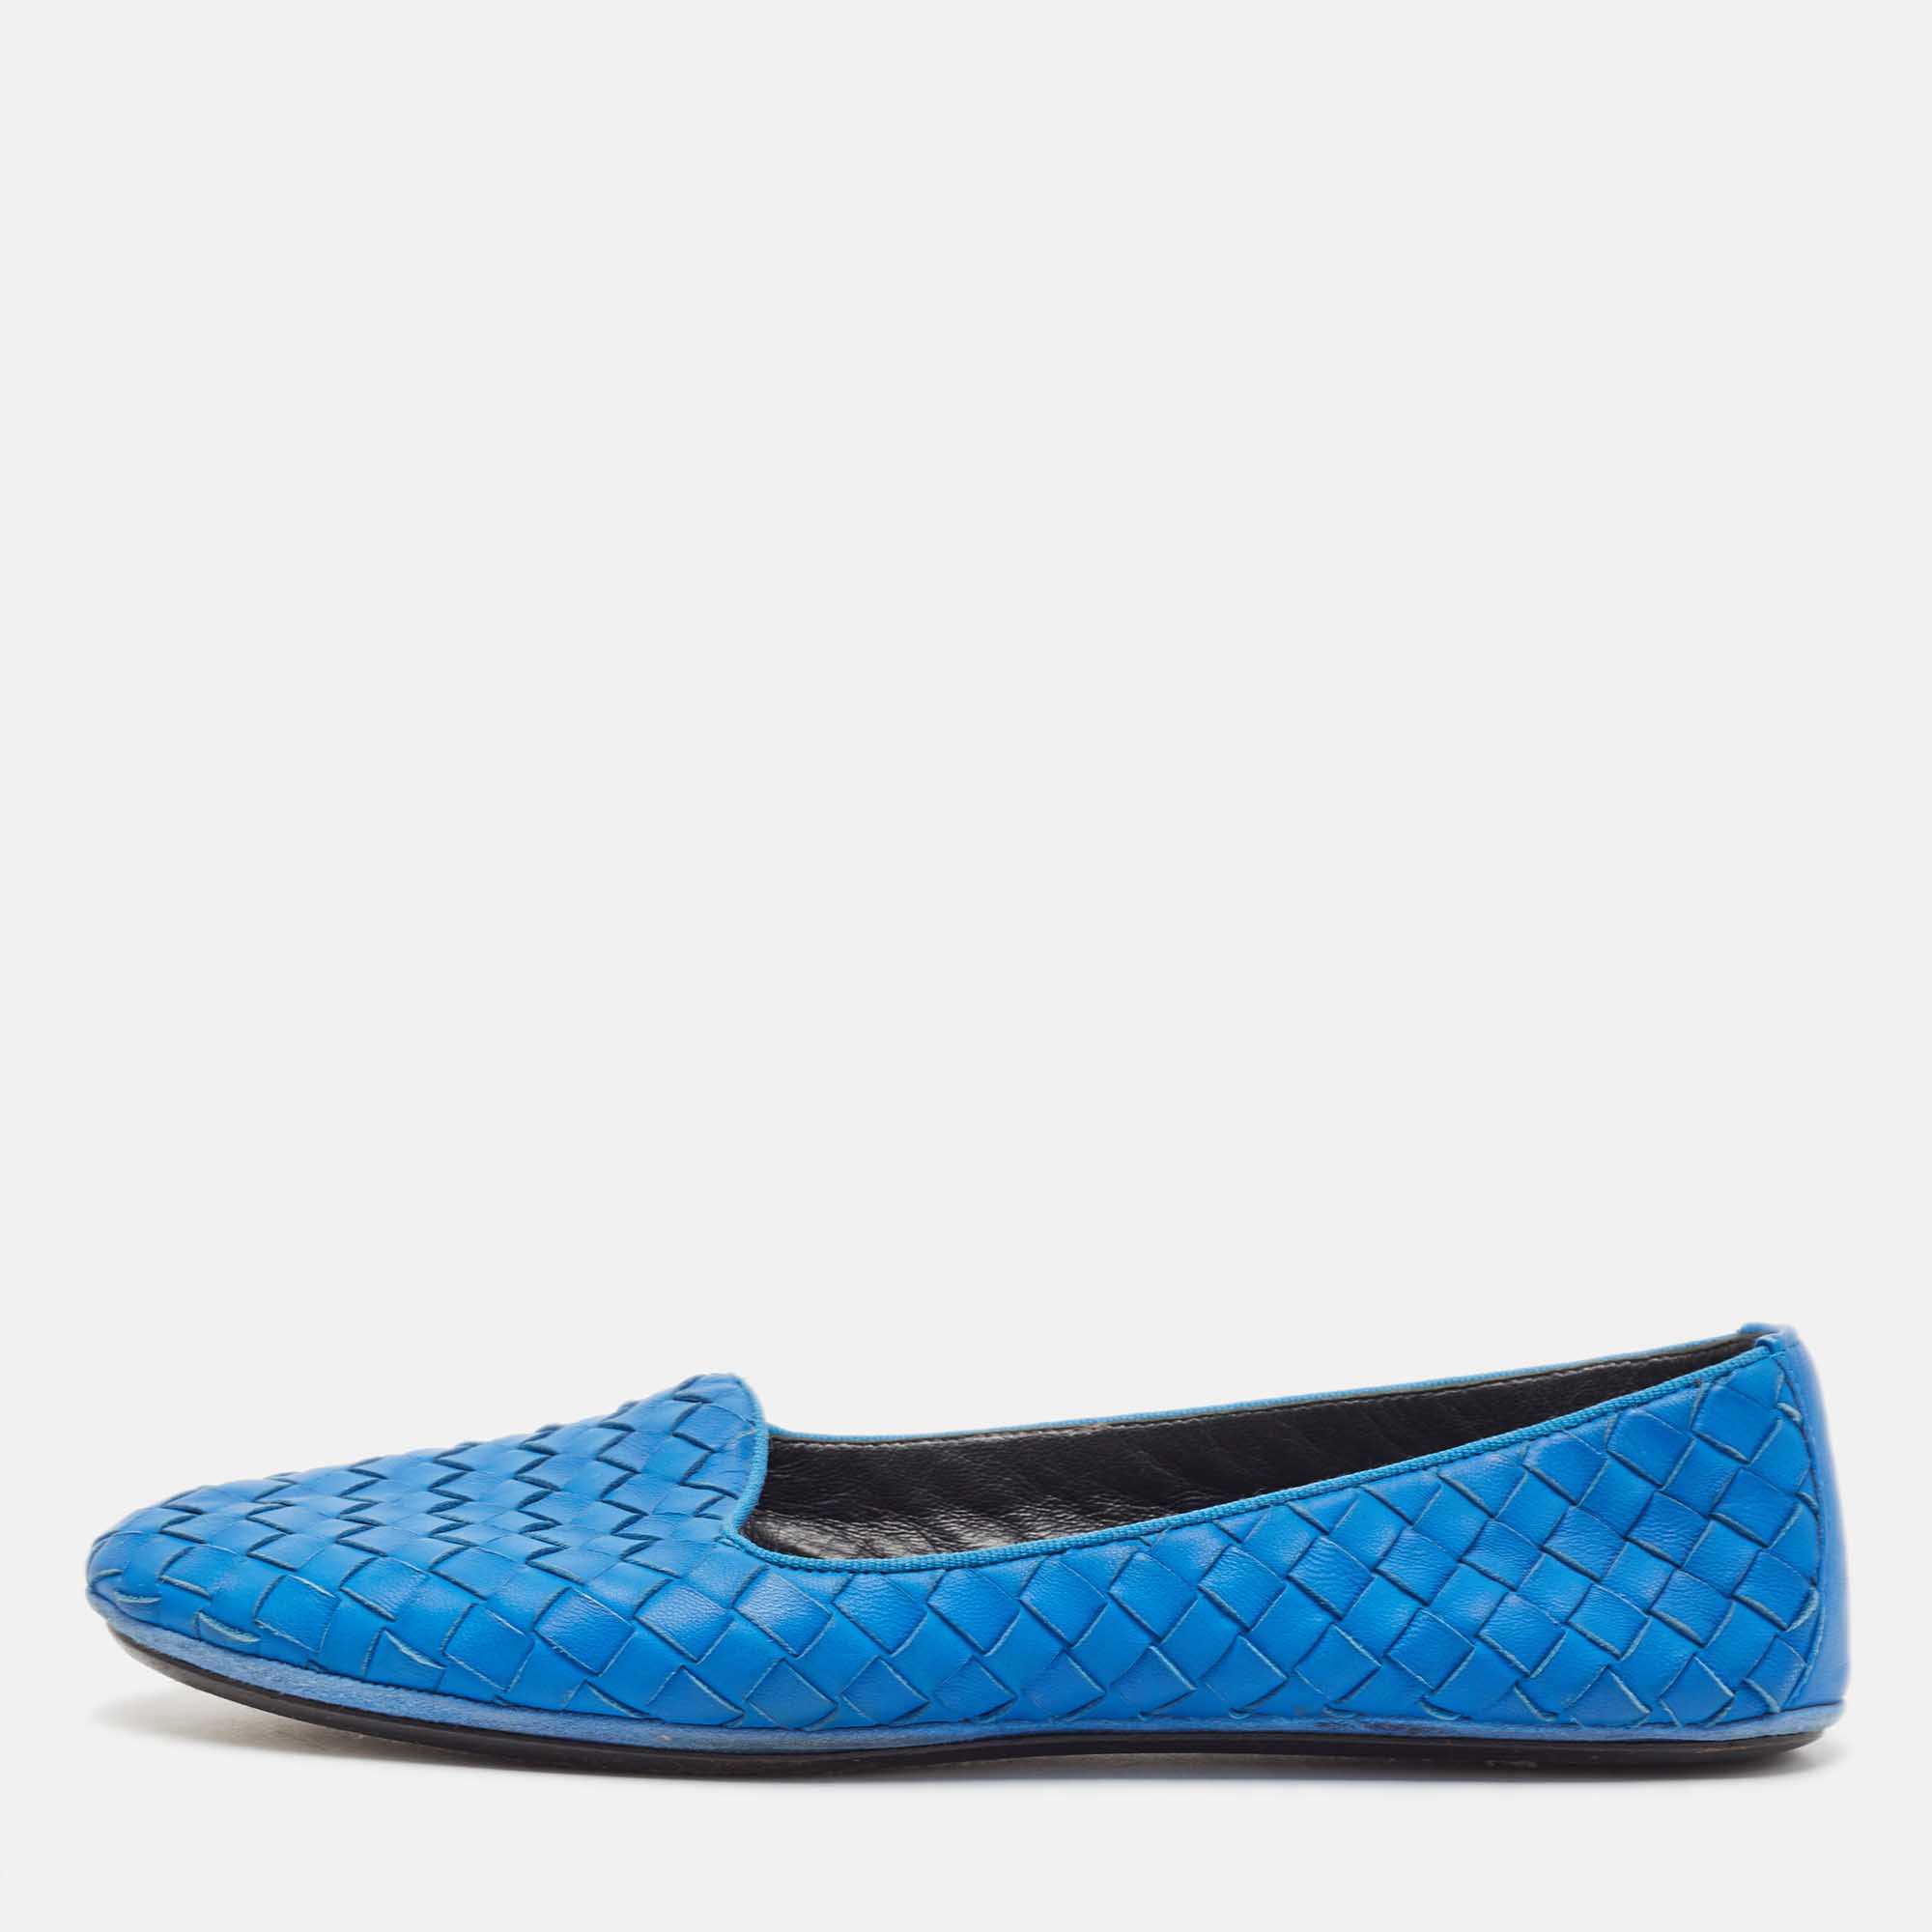 Bottega veneta blue intrecciato leather smoking slippers size 37